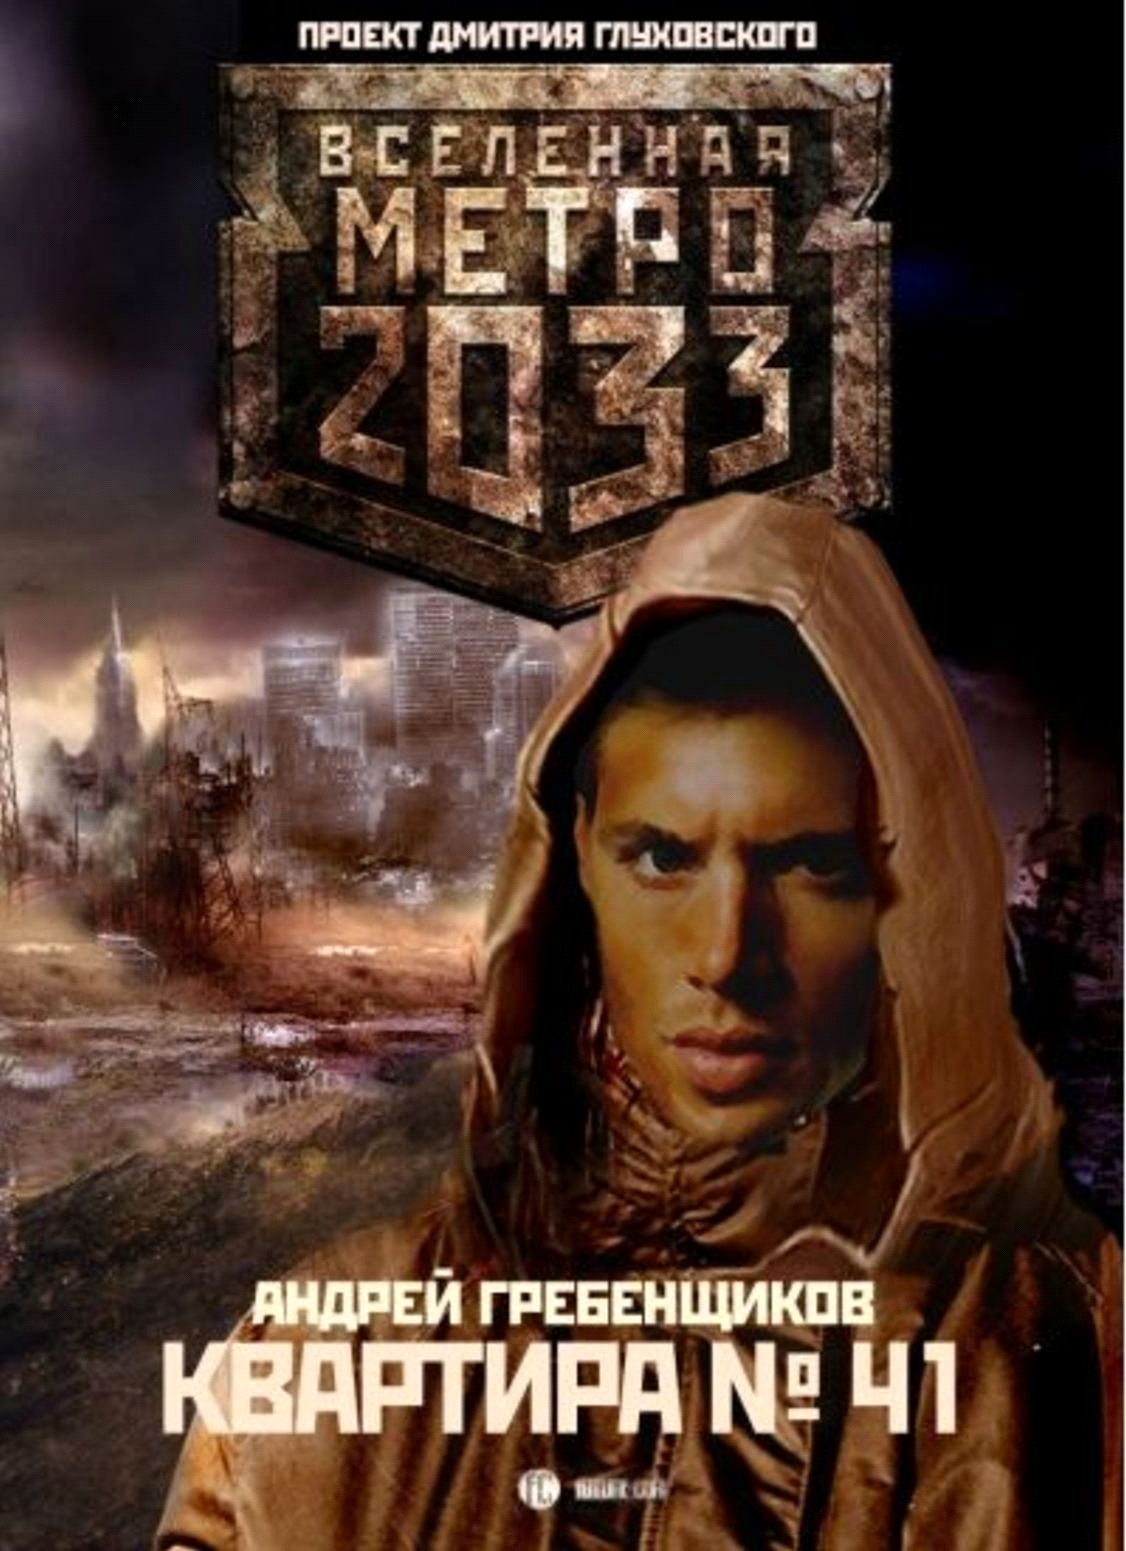 Сборник книг метро 2033 скачать apk